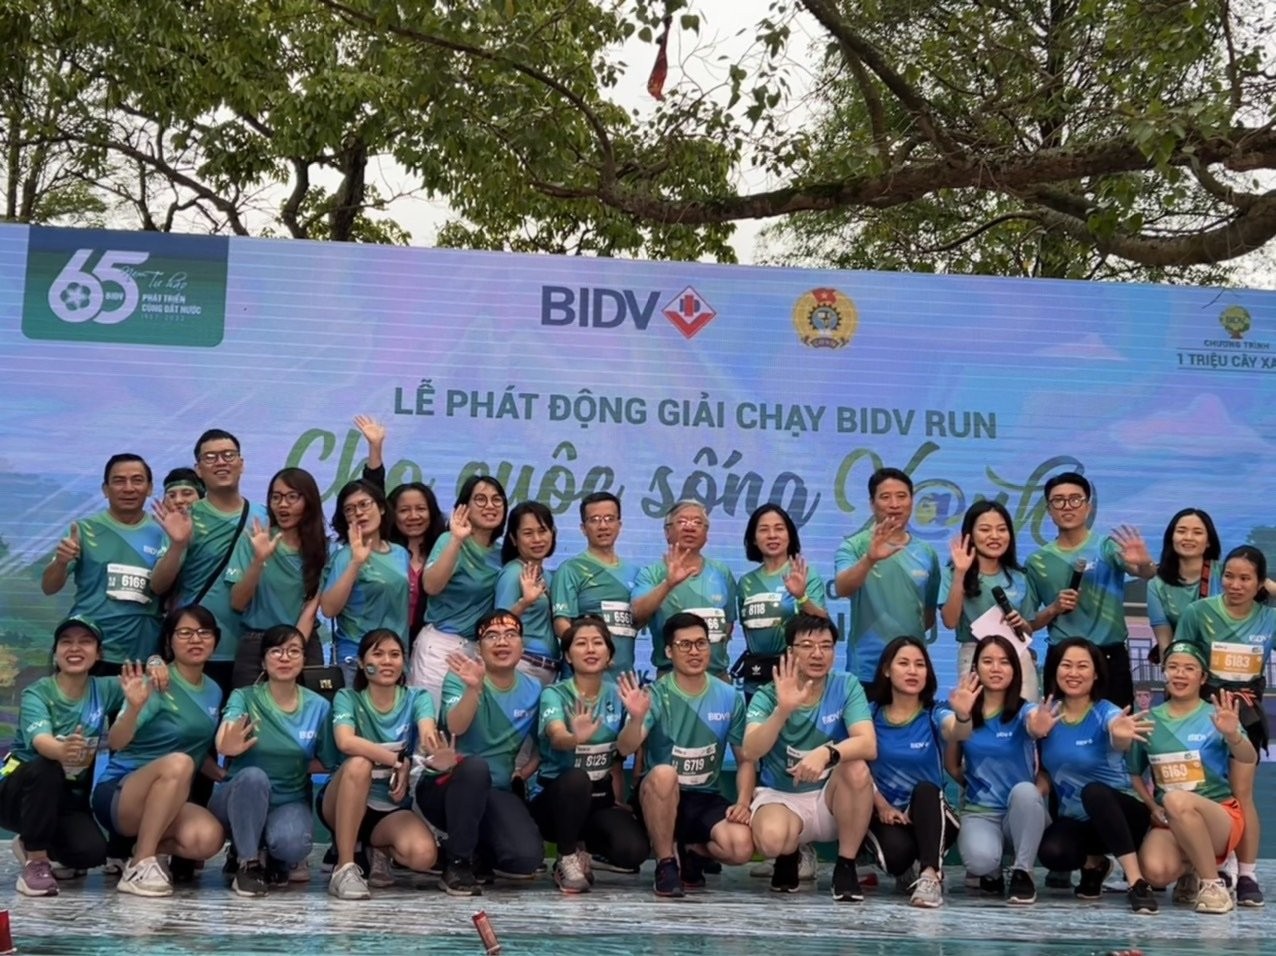 Khởi động giải chạy BIDV: Cho cuộc sống xanh